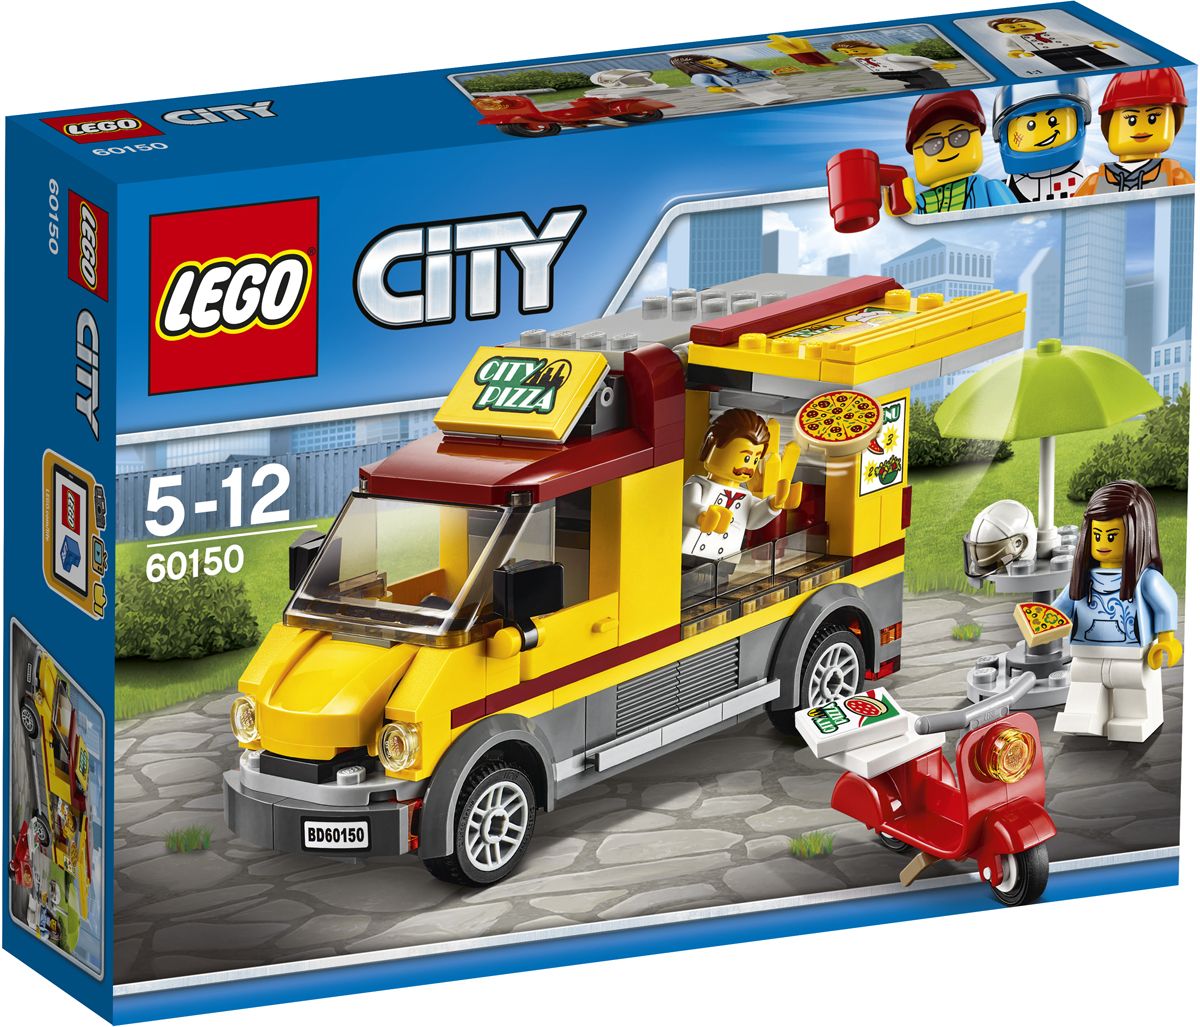 LEGO City 60150 - 